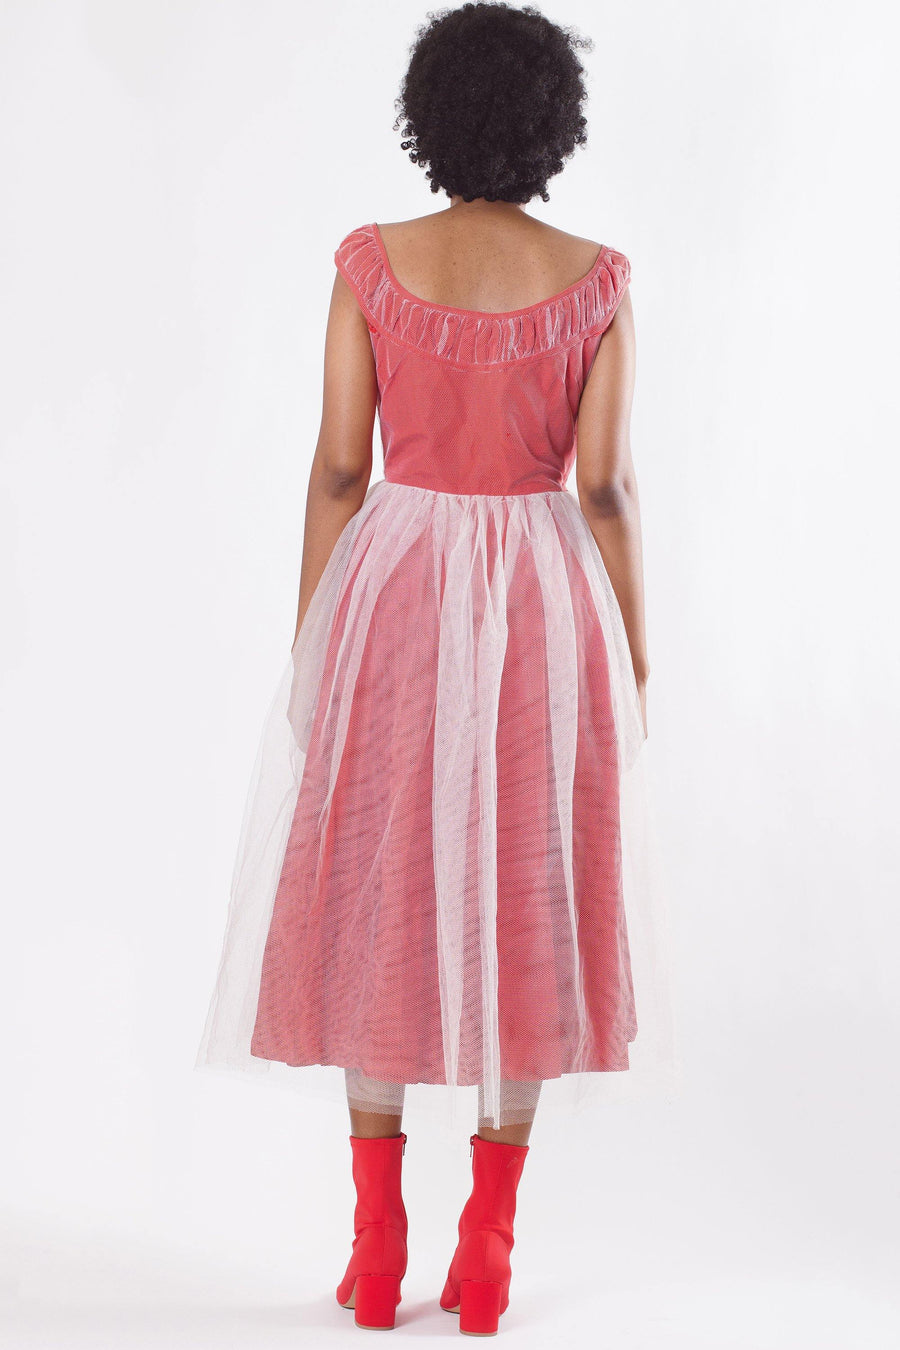 Vintage Handmade Pink Tulle Dress - Mawoolisa